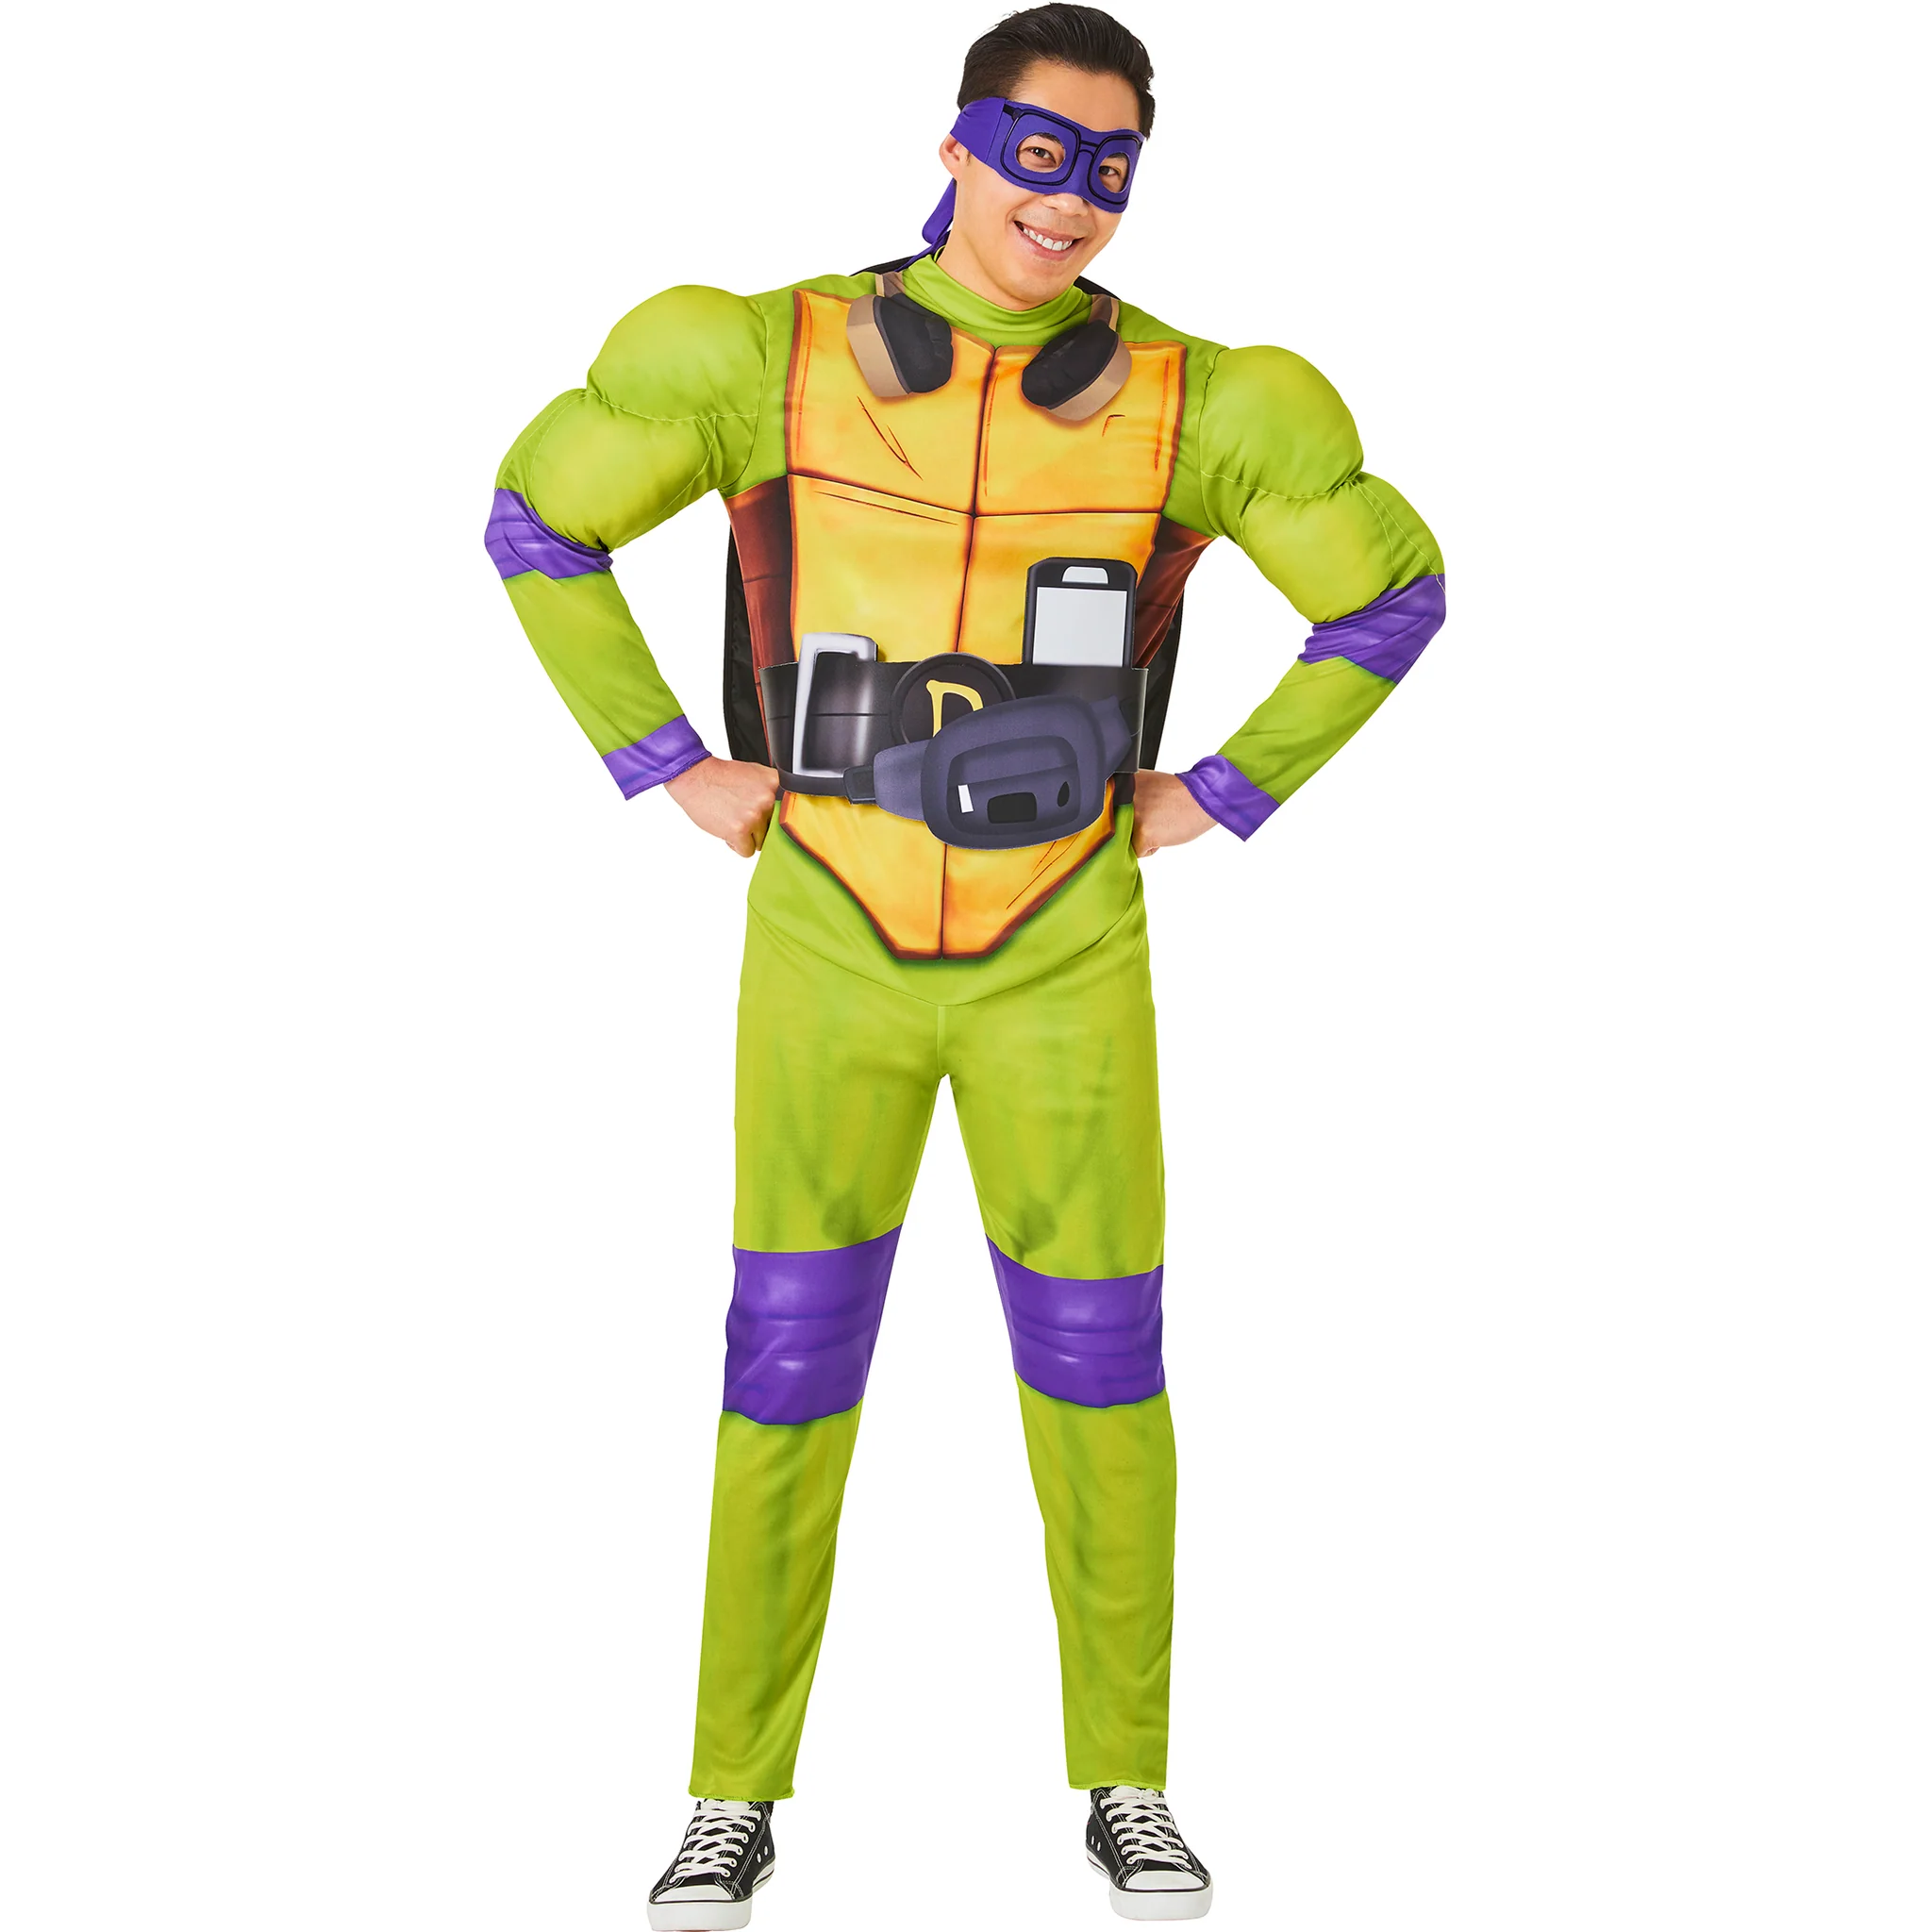 Teenage Mutant Ninja Turtles Donatello Adult T-Shirt Kit